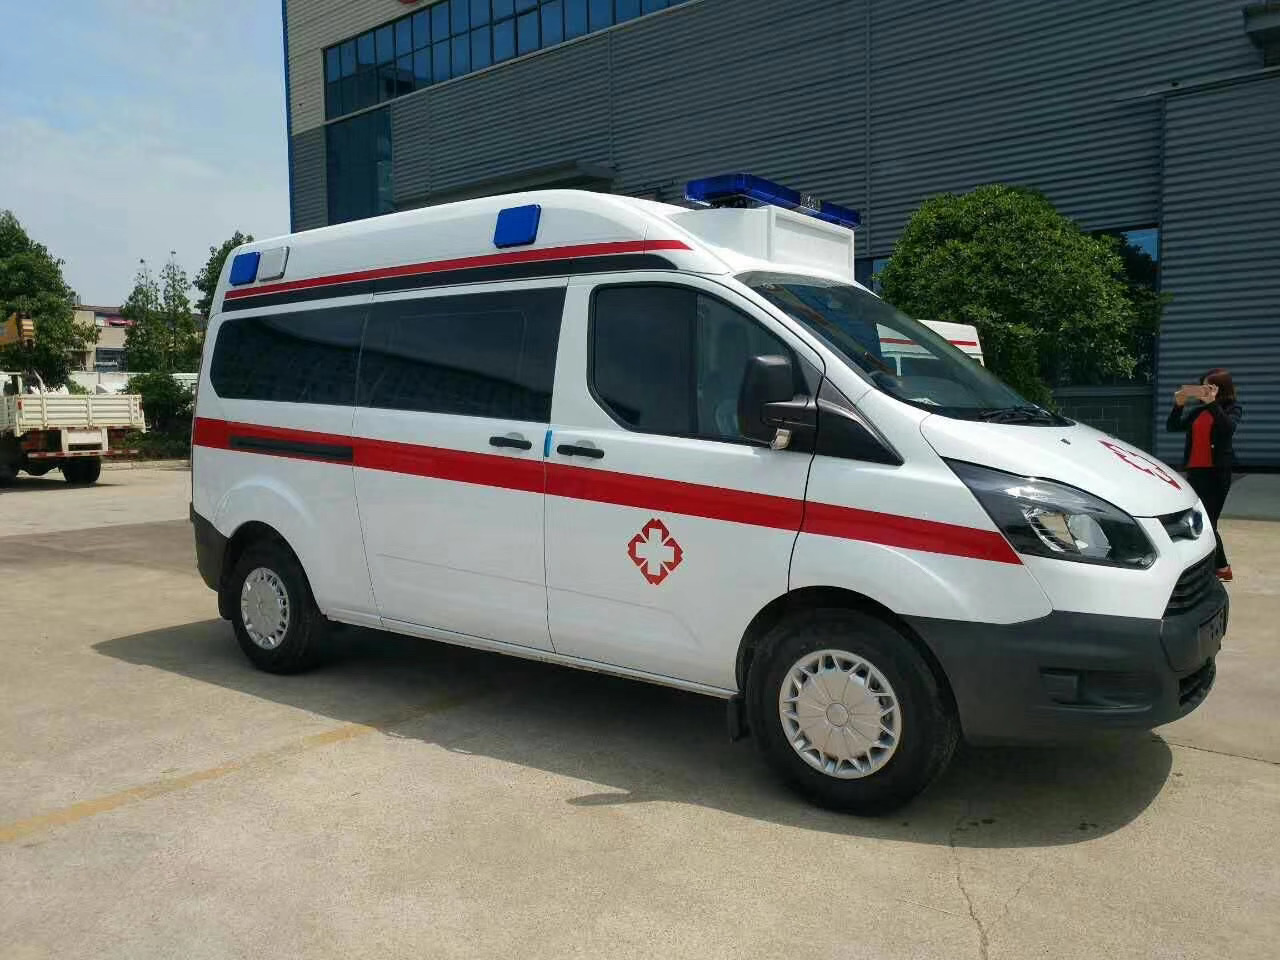 龙游县出院转院救护车